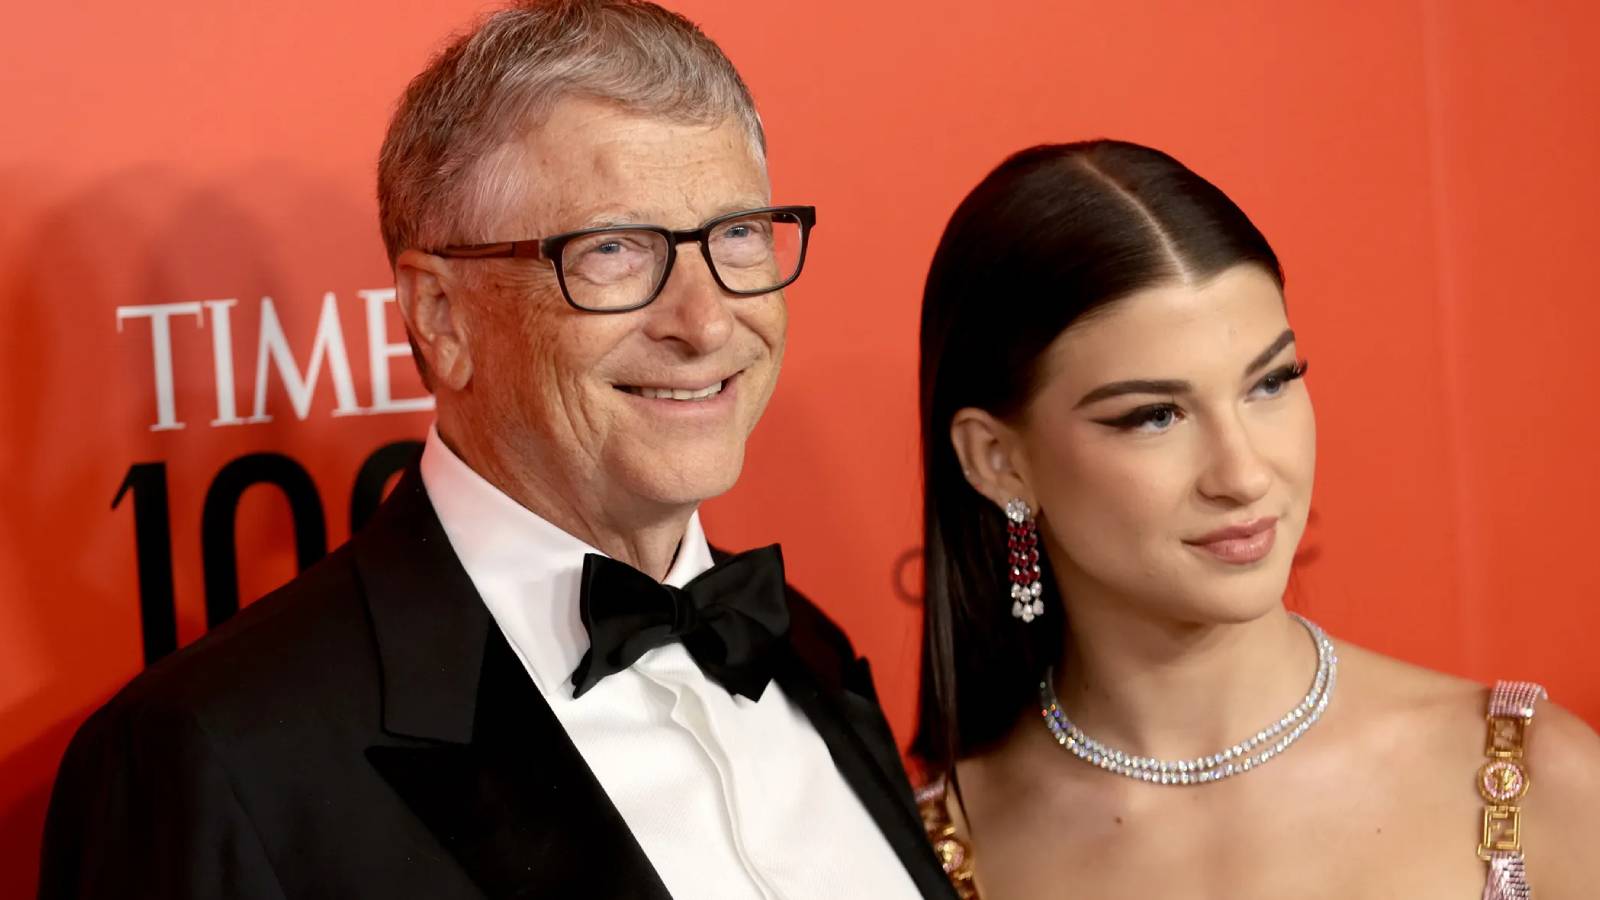 Milyarder Bill Gates'in kızı Phoebe Gates, Paul McCartney'nin torunu Arthur Donald ile sevgili olduklarını açıkladı